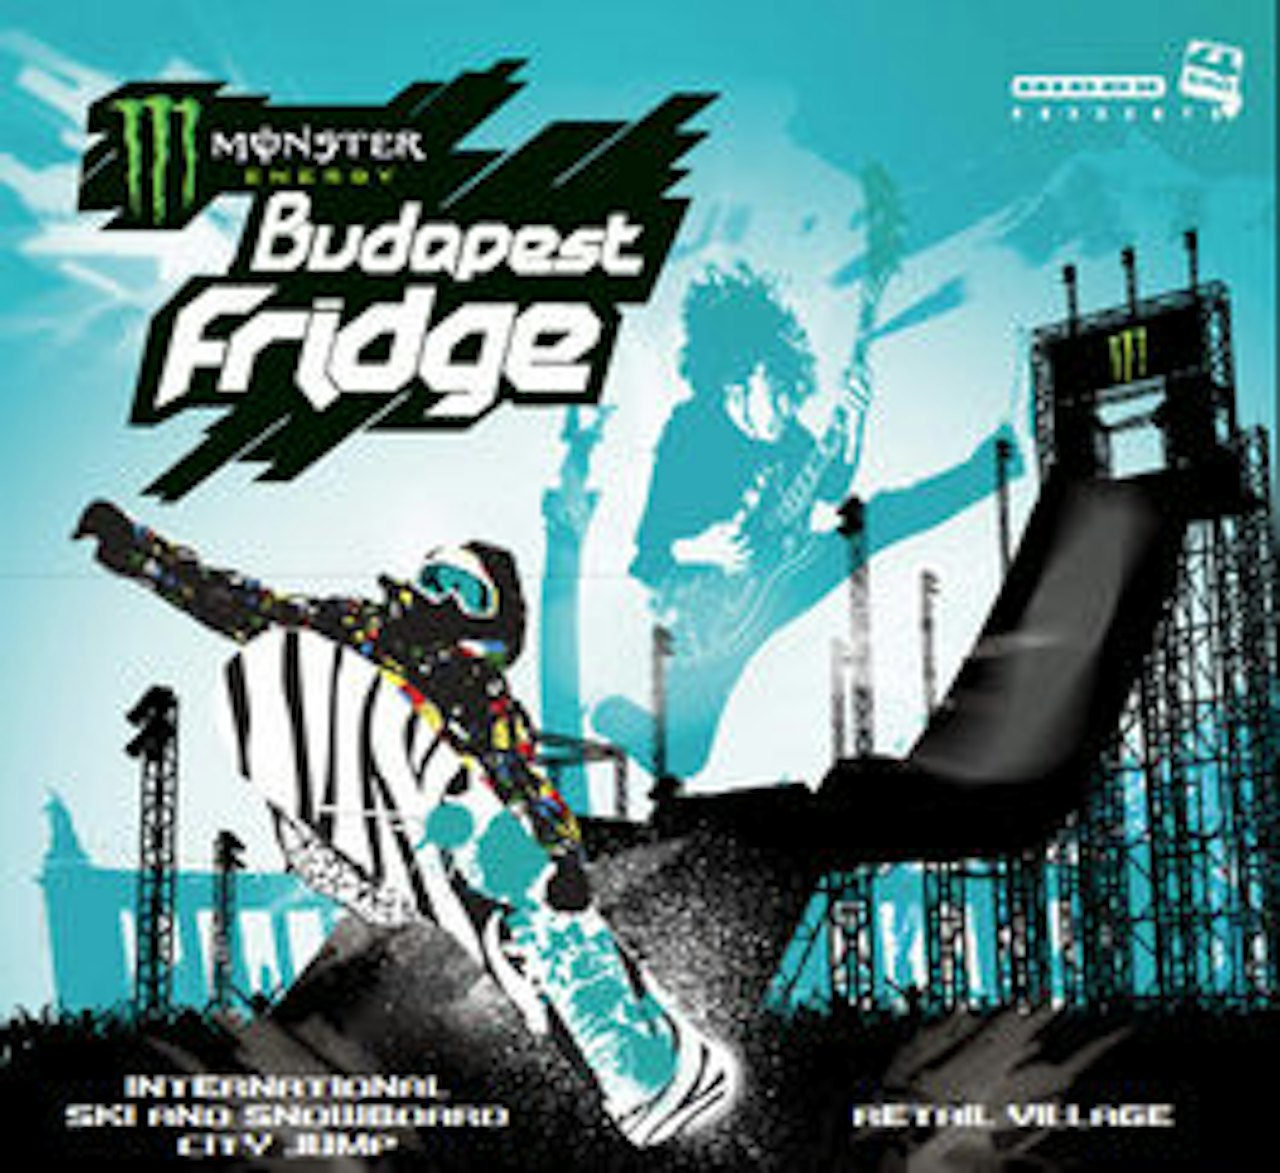 BUDAPEST FRIDGE: Denne helga er det bigair-konkurranse i Budapest.